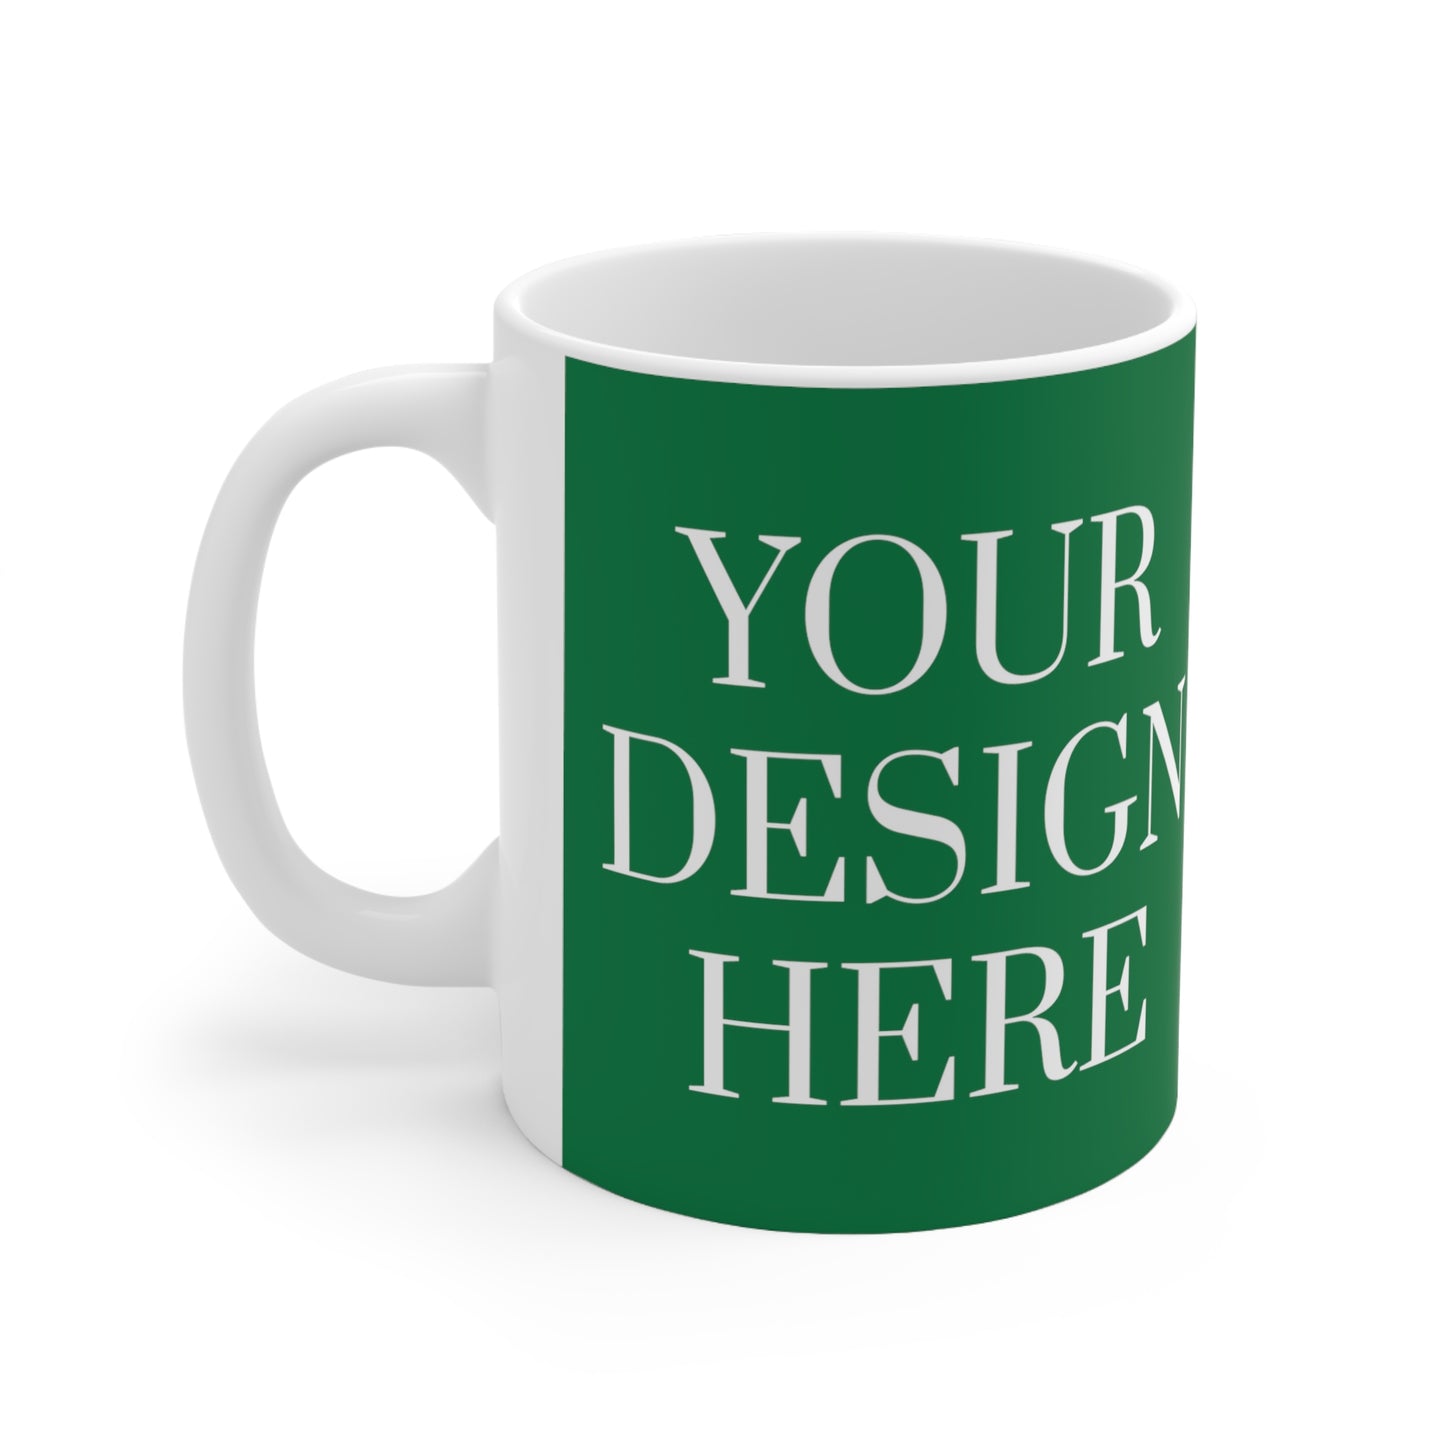 Mug en céramique 11 oz - Personnalisé - Votre design ici - 08